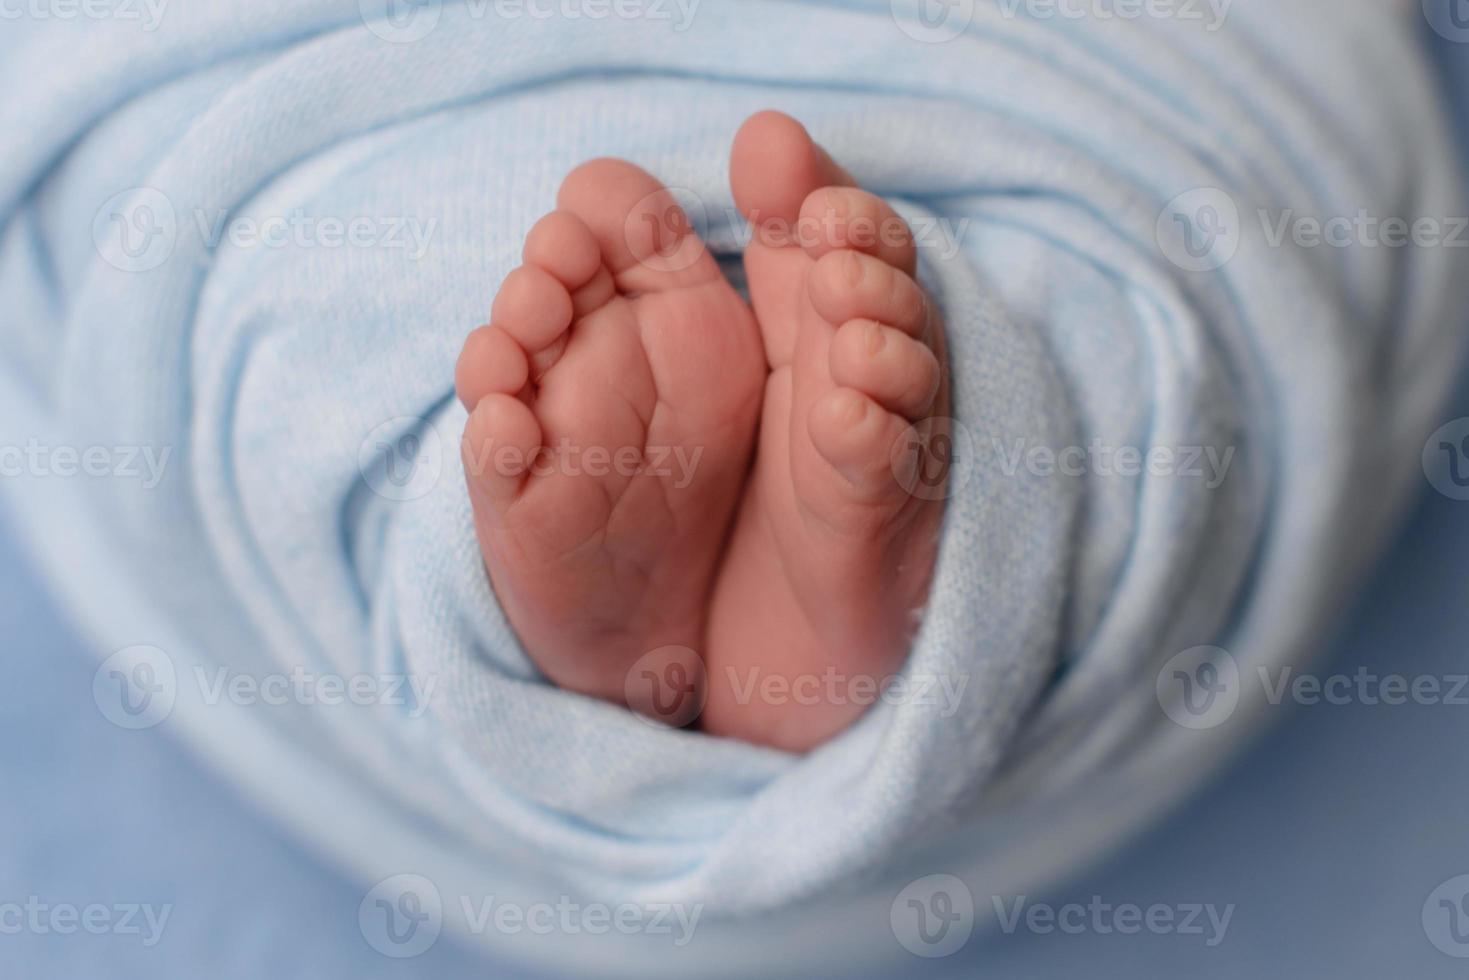 piernas pequeñas y hermosas de un bebé recién nacido en los primeros días de vida foto